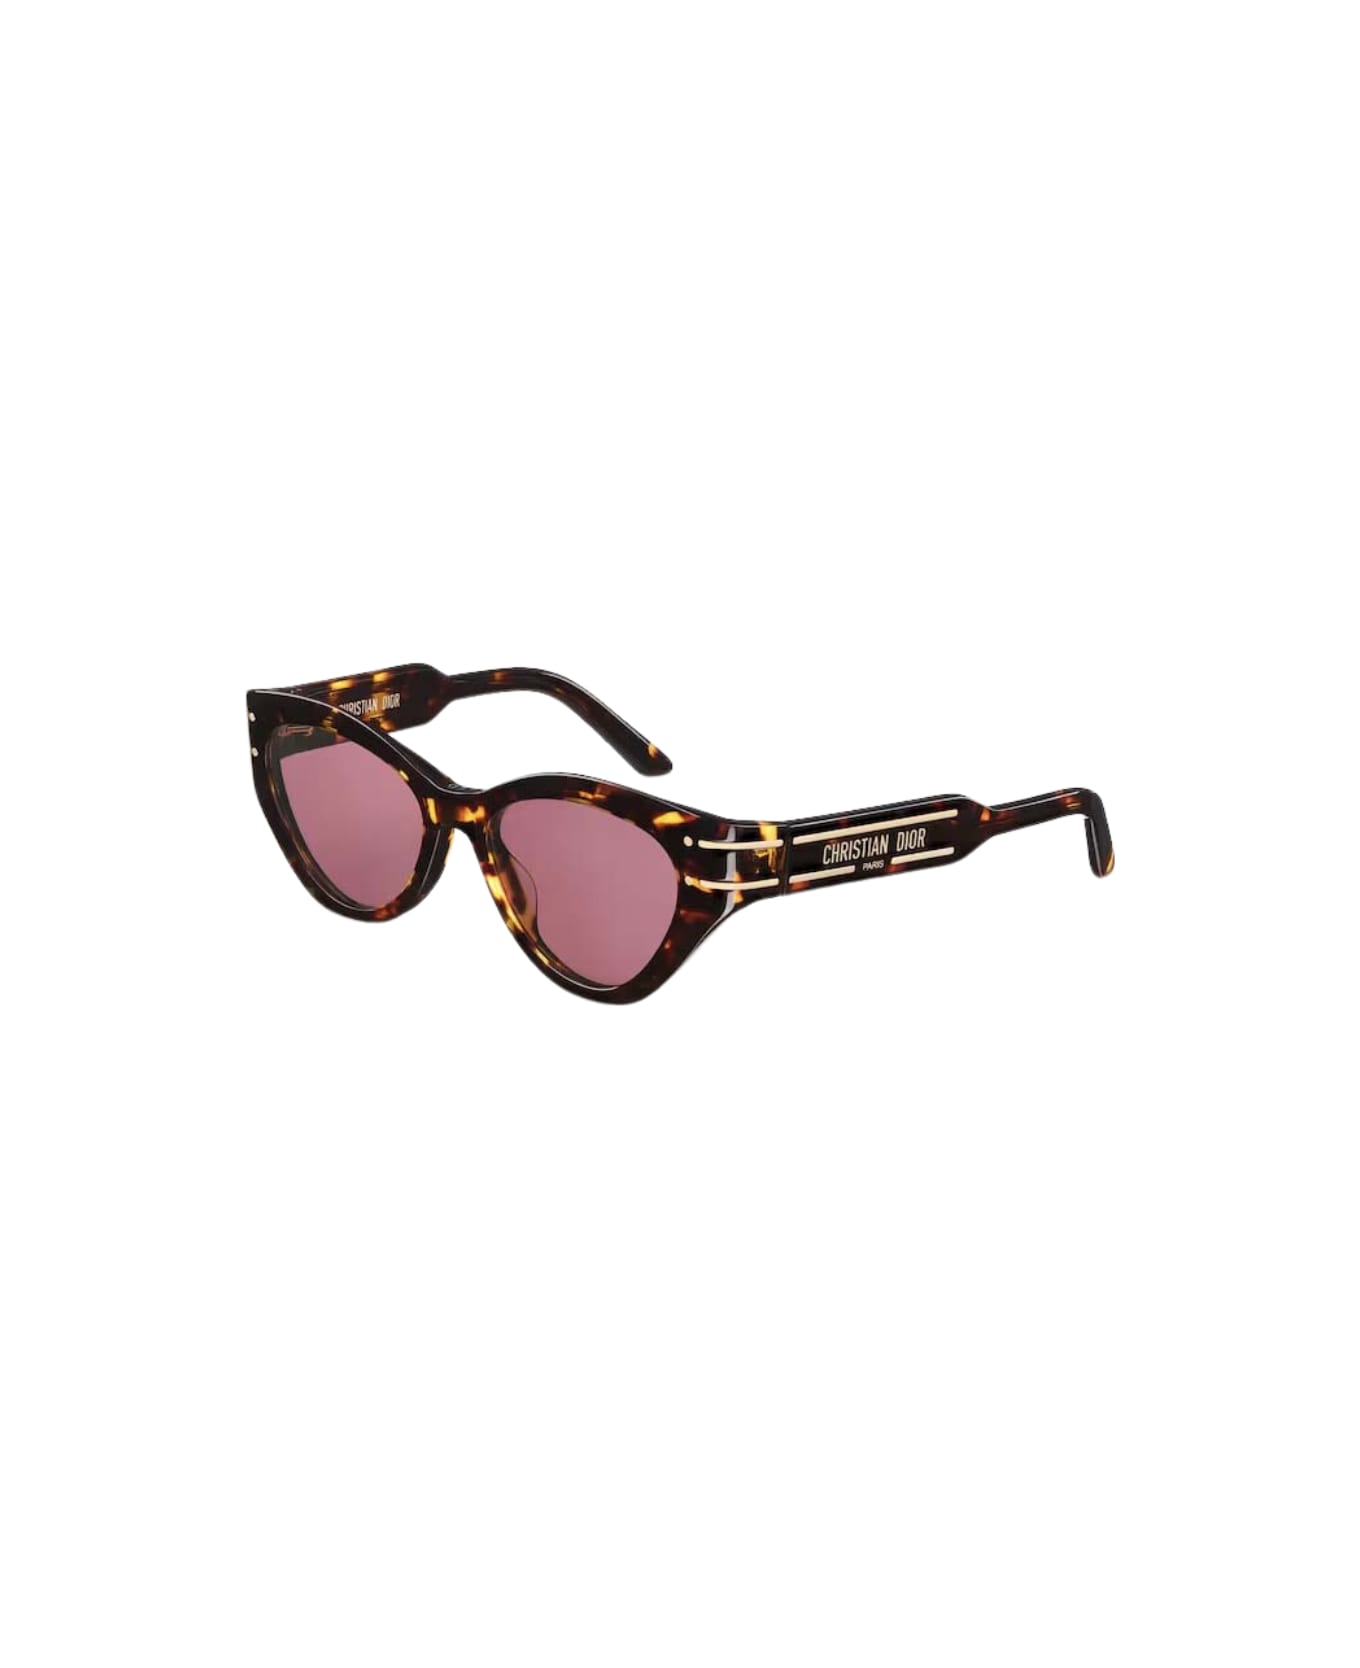 Dior Eyewear Sunglasses - Havana/Rosa サングラス